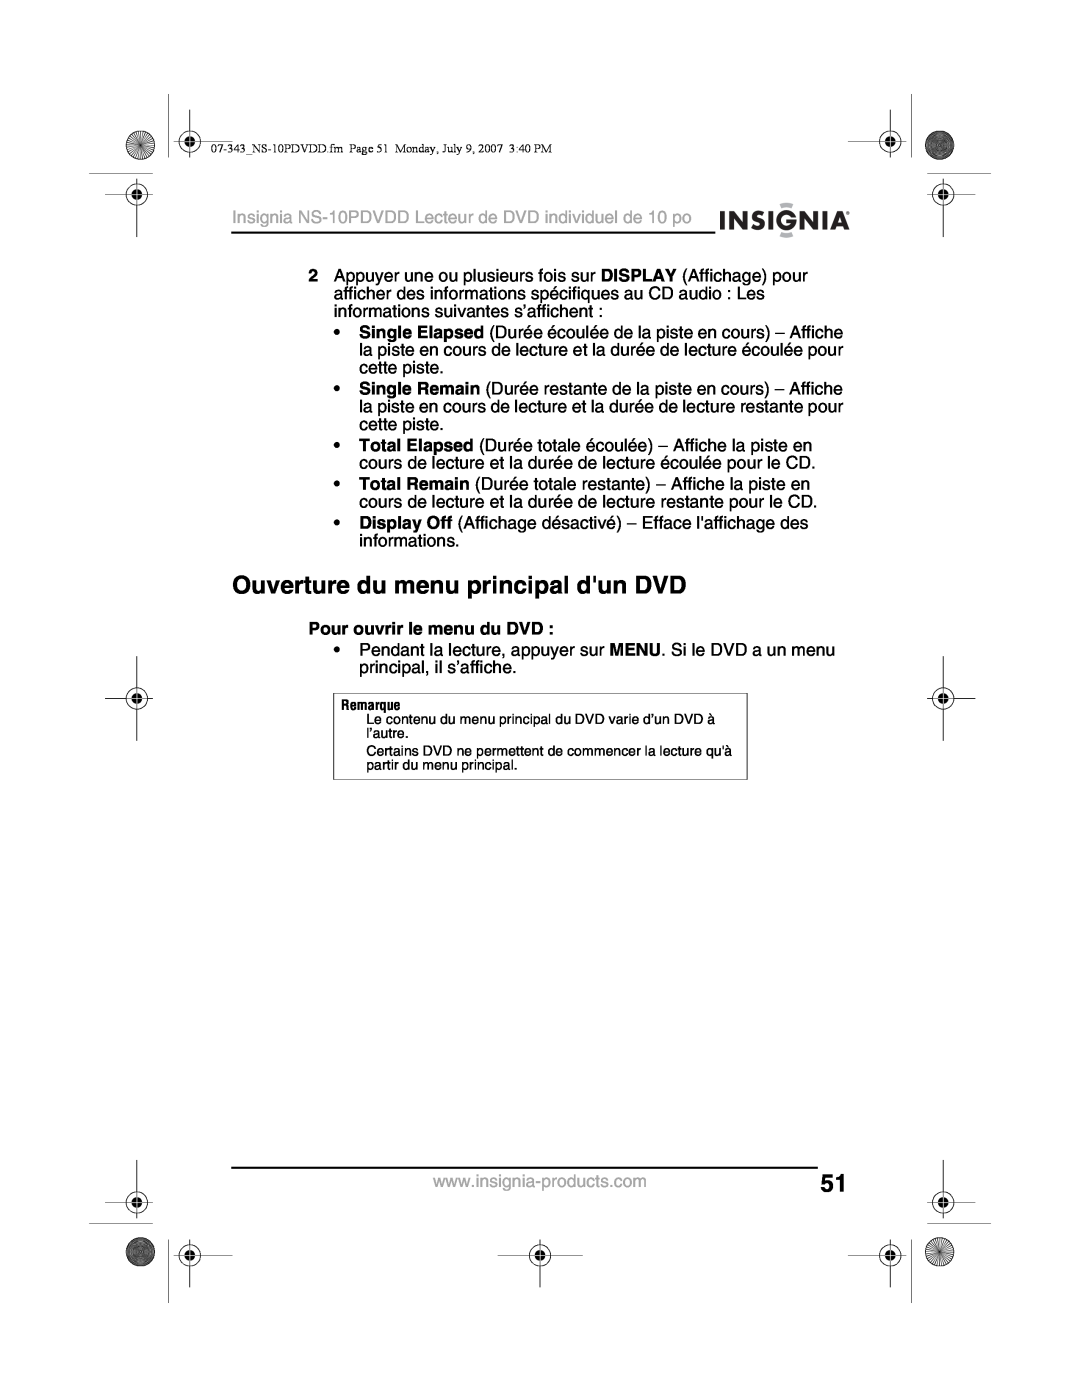 Insignia NS-10PDVDD manual Ouverture du menu principal dun DVD, Pour ouvrir le menu du DVD 